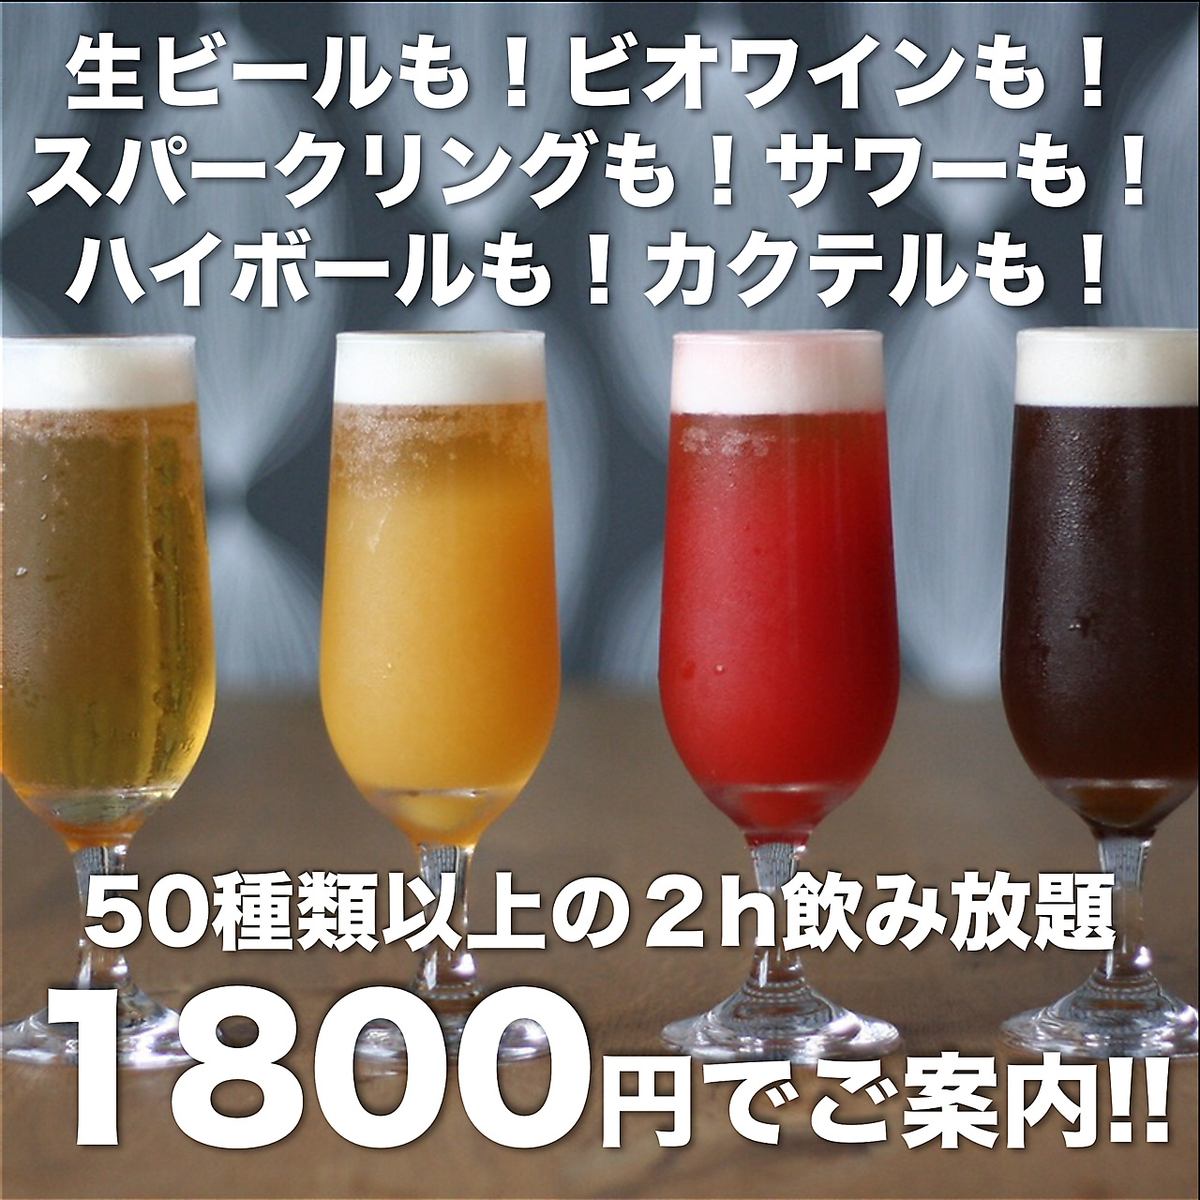 2小時無限暢飲1,800日圓！